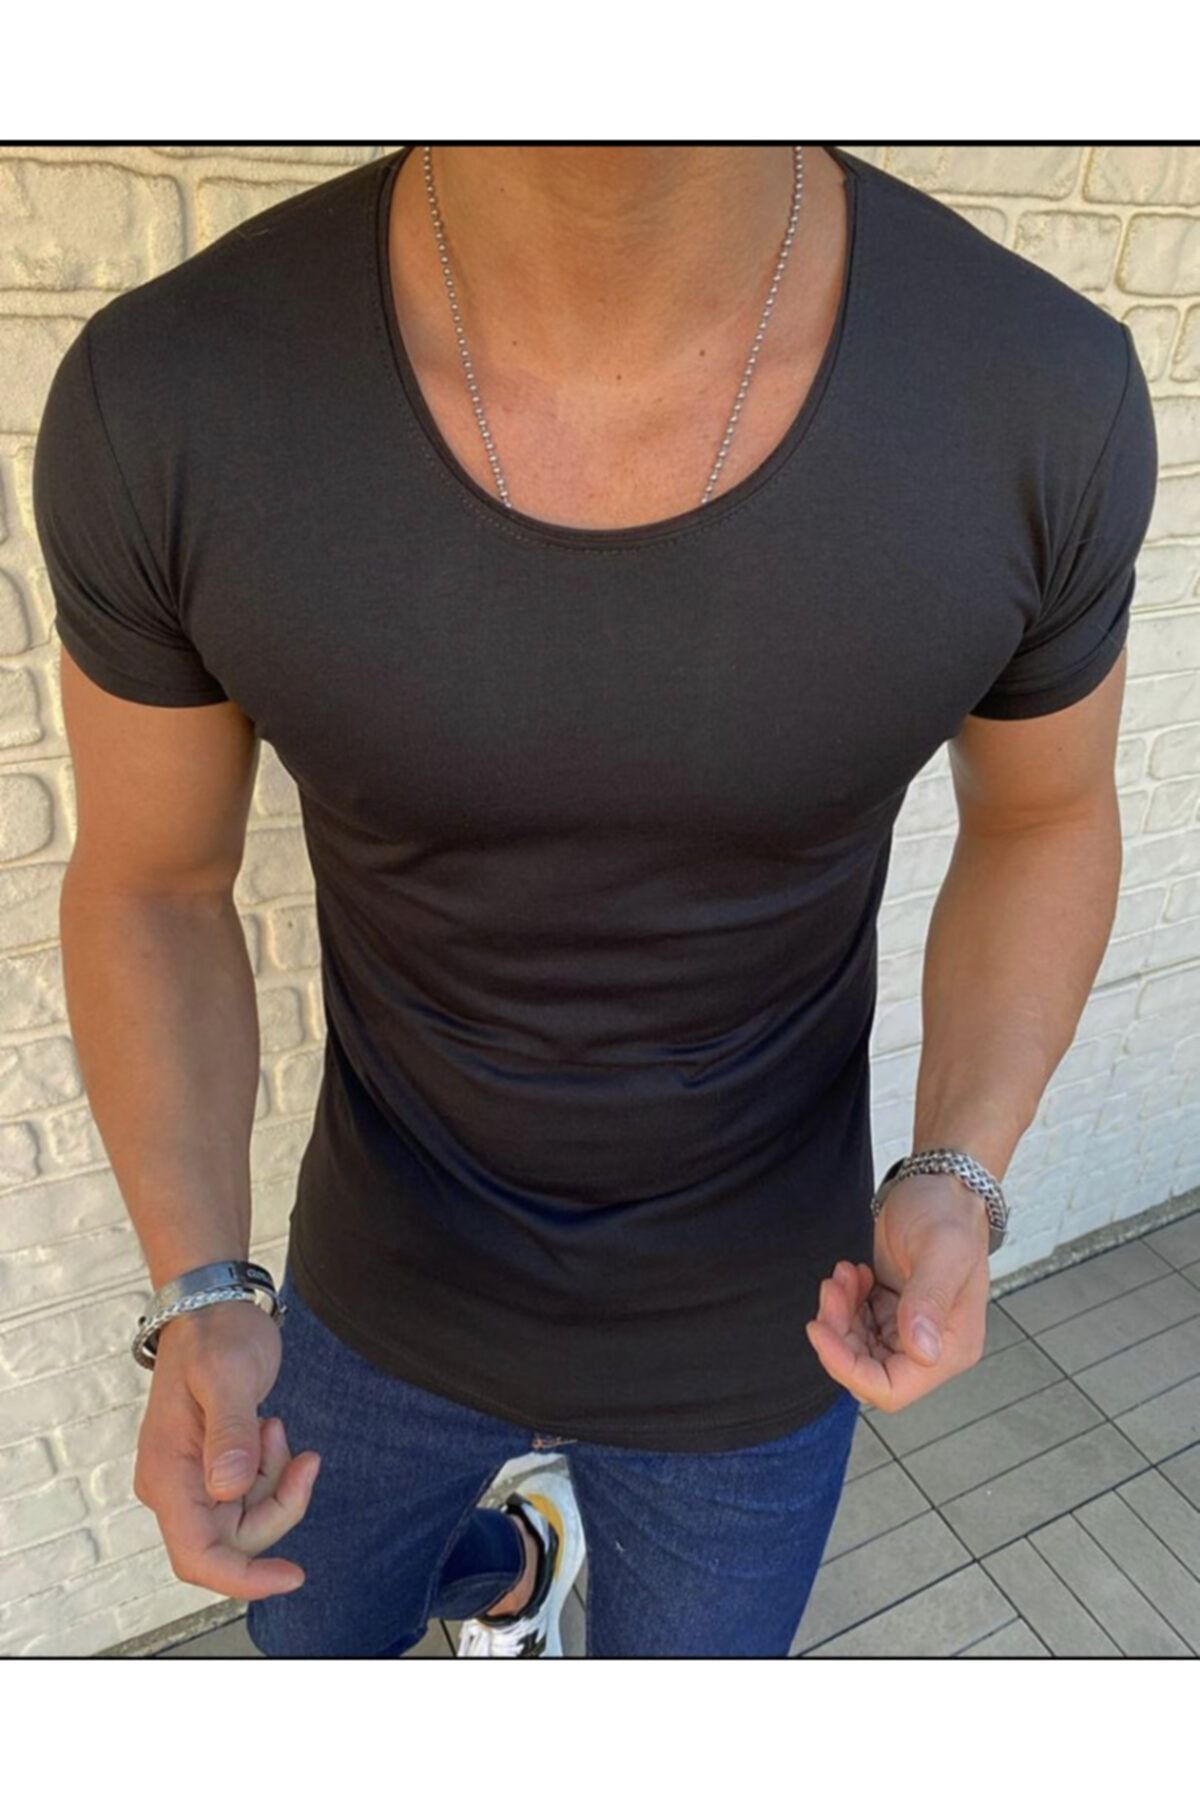 BYBÜLENT Erkek Oval Yaka Tişört Açık Yaka Likralı Slim Fit T-shirt Siyah Vr046